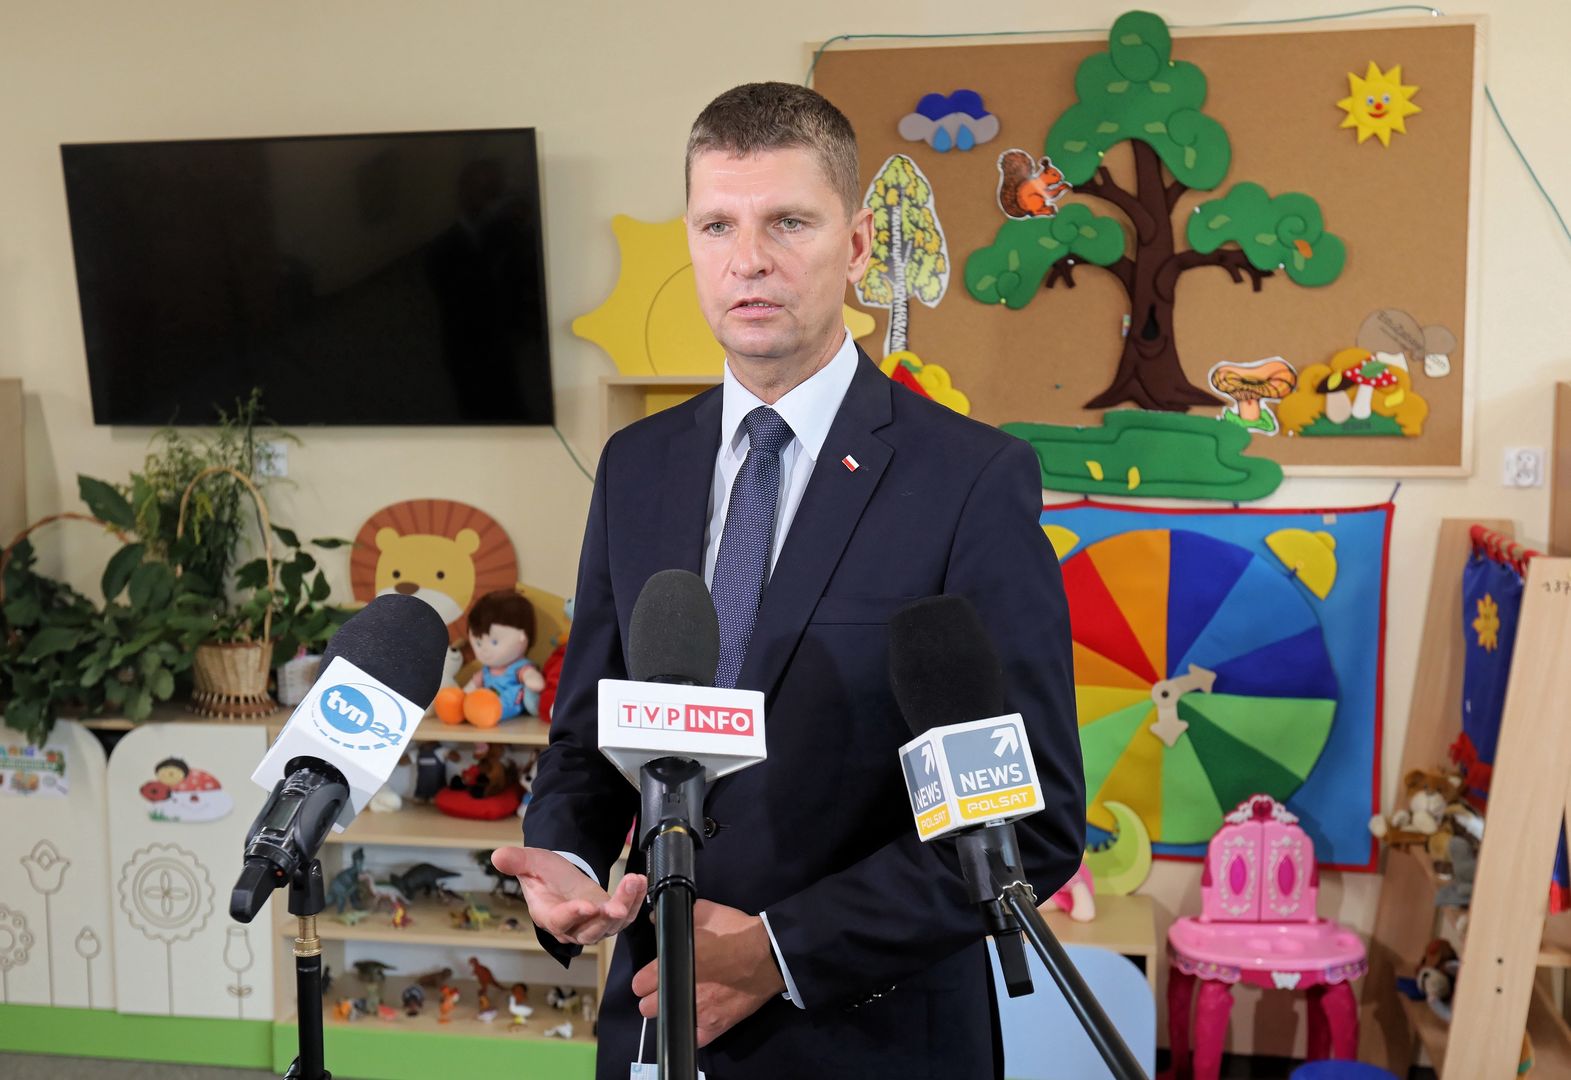 Powrót do szkoły. Minister Piątkowski rozwiewa kolejne wątpliwości